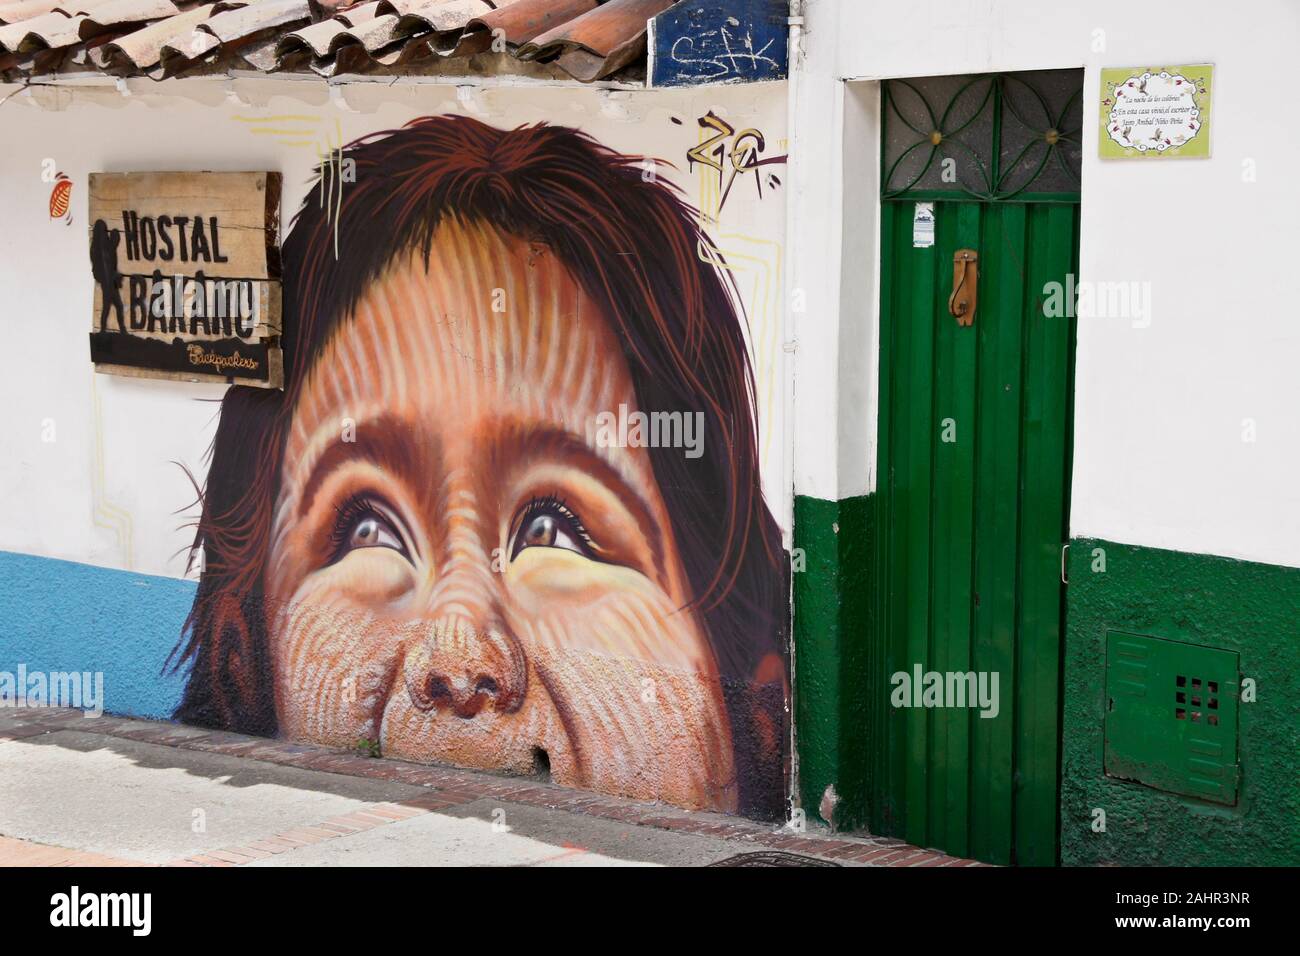 Murale dipinto sulla parte anteriore della struttura Hostal Bakano in Candelaria distretto di Bogotà, Colombia Foto Stock